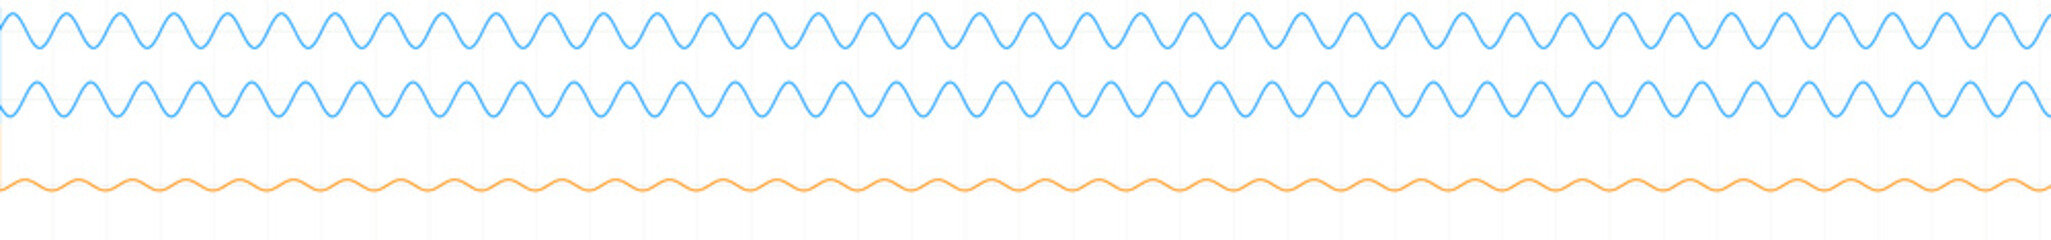 Waveforms illustration, optics, physics and quantum mechanics